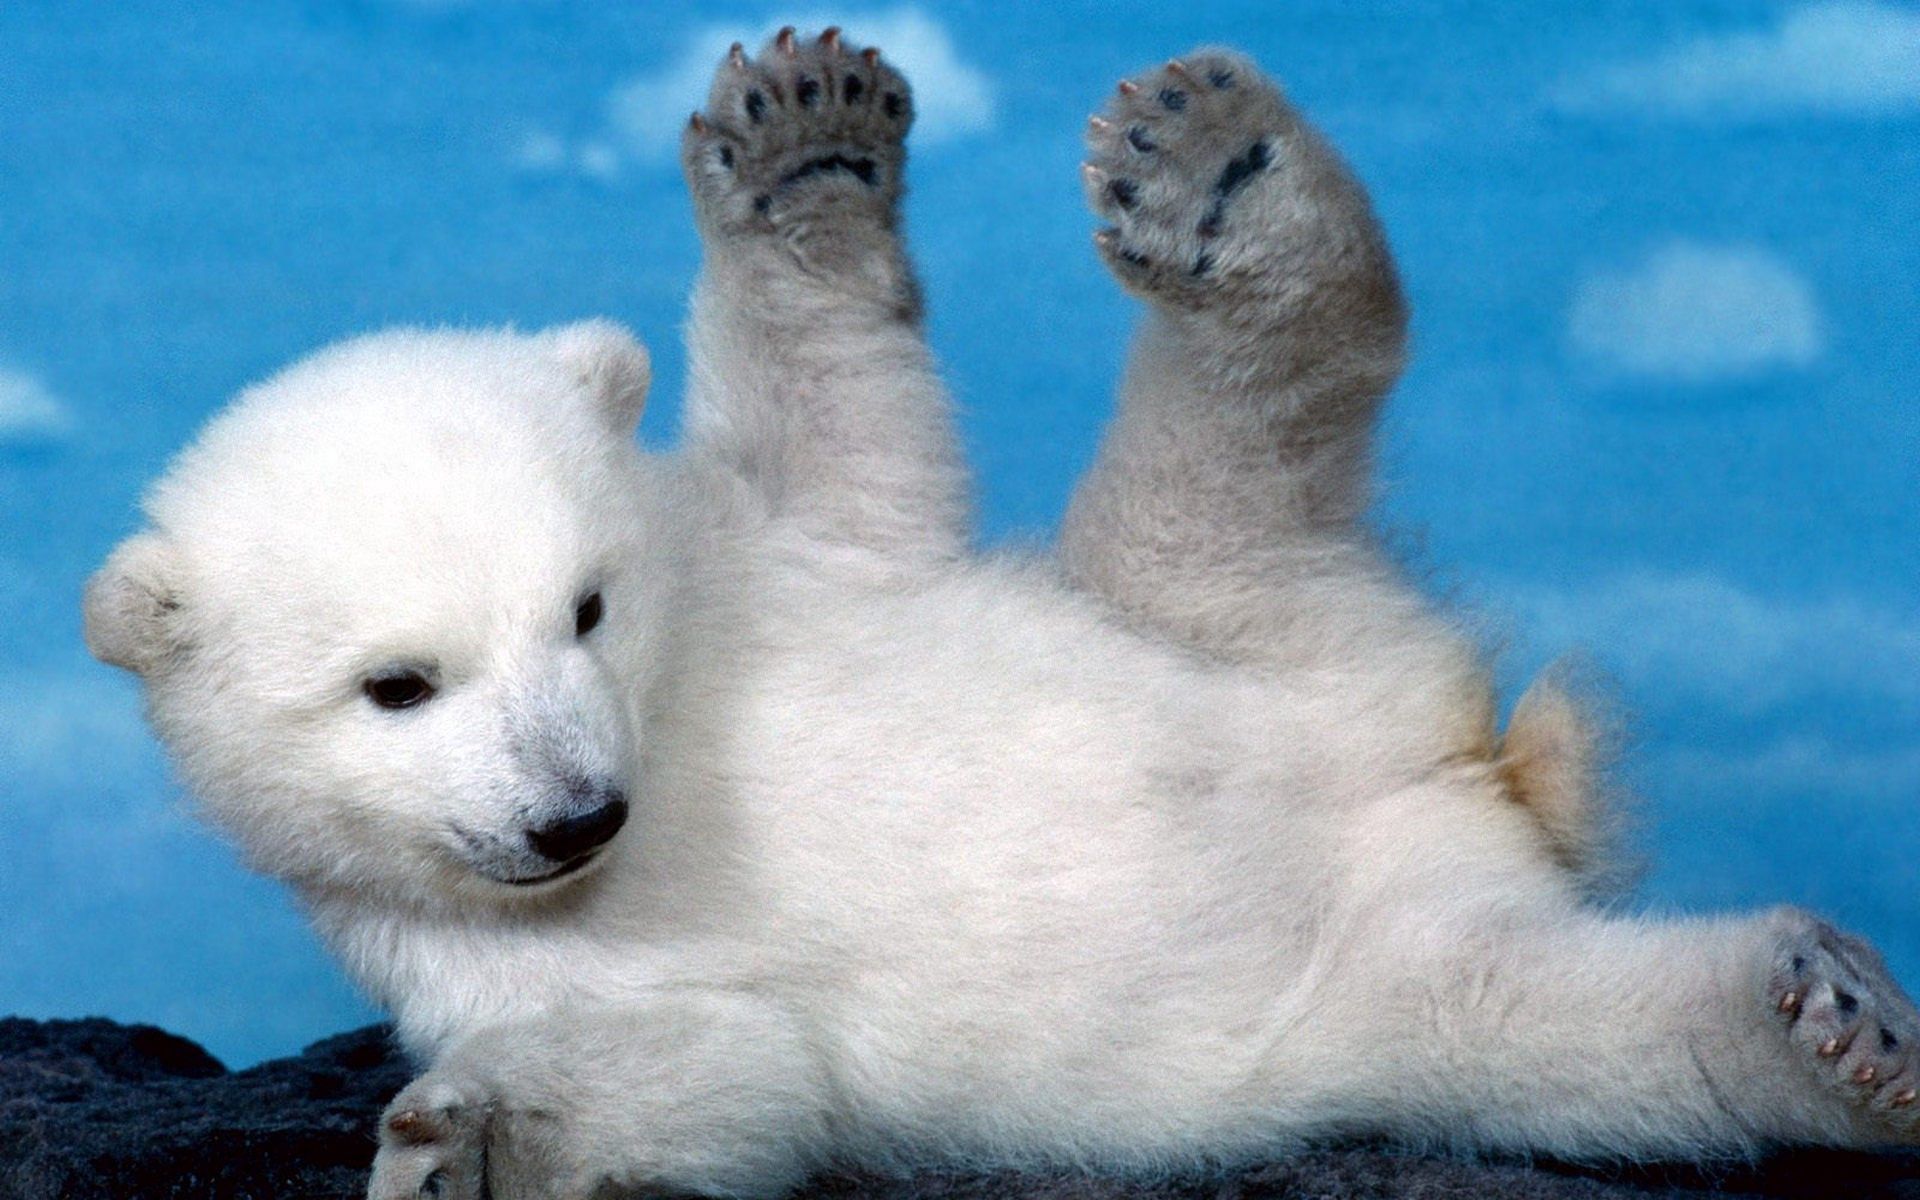 animals, teddy bear, young, to lie down, lie, playful, joey, paws, polar bear, bear cub